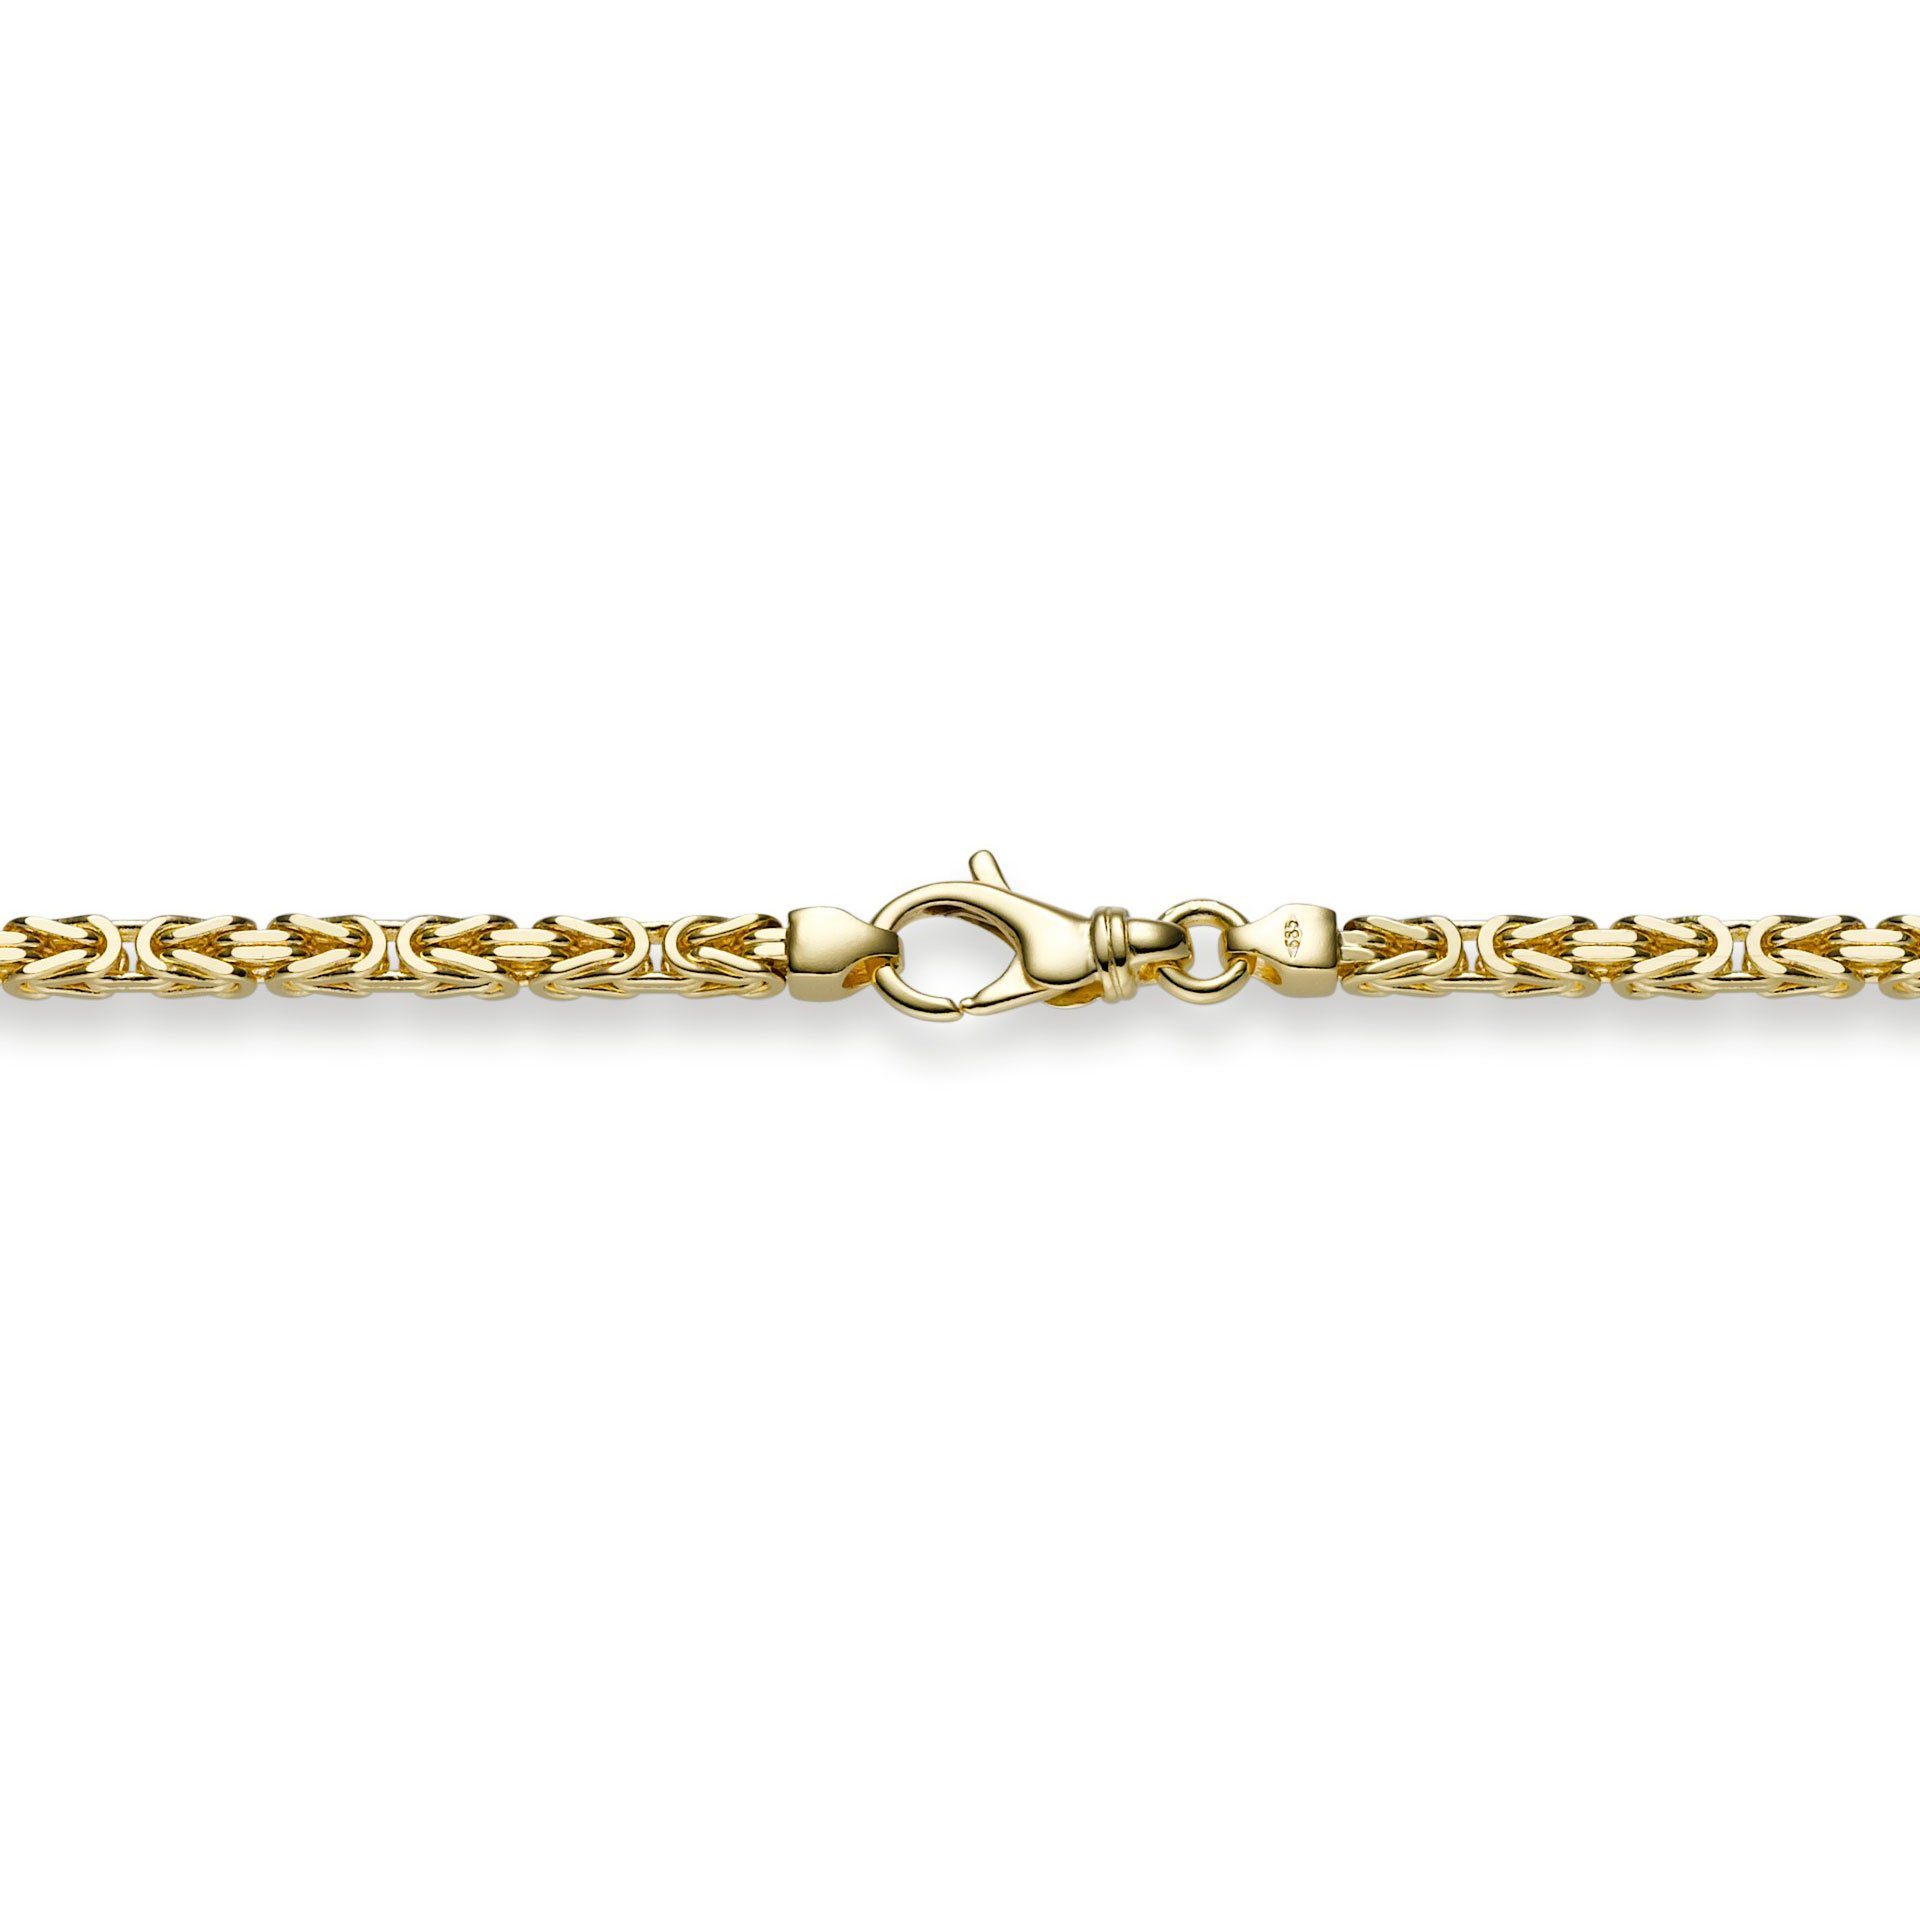 HOPLO Goldarmband Goldkette Königskette Länge 21cm - Breite 3,0mm - 750-18 Karat Gold